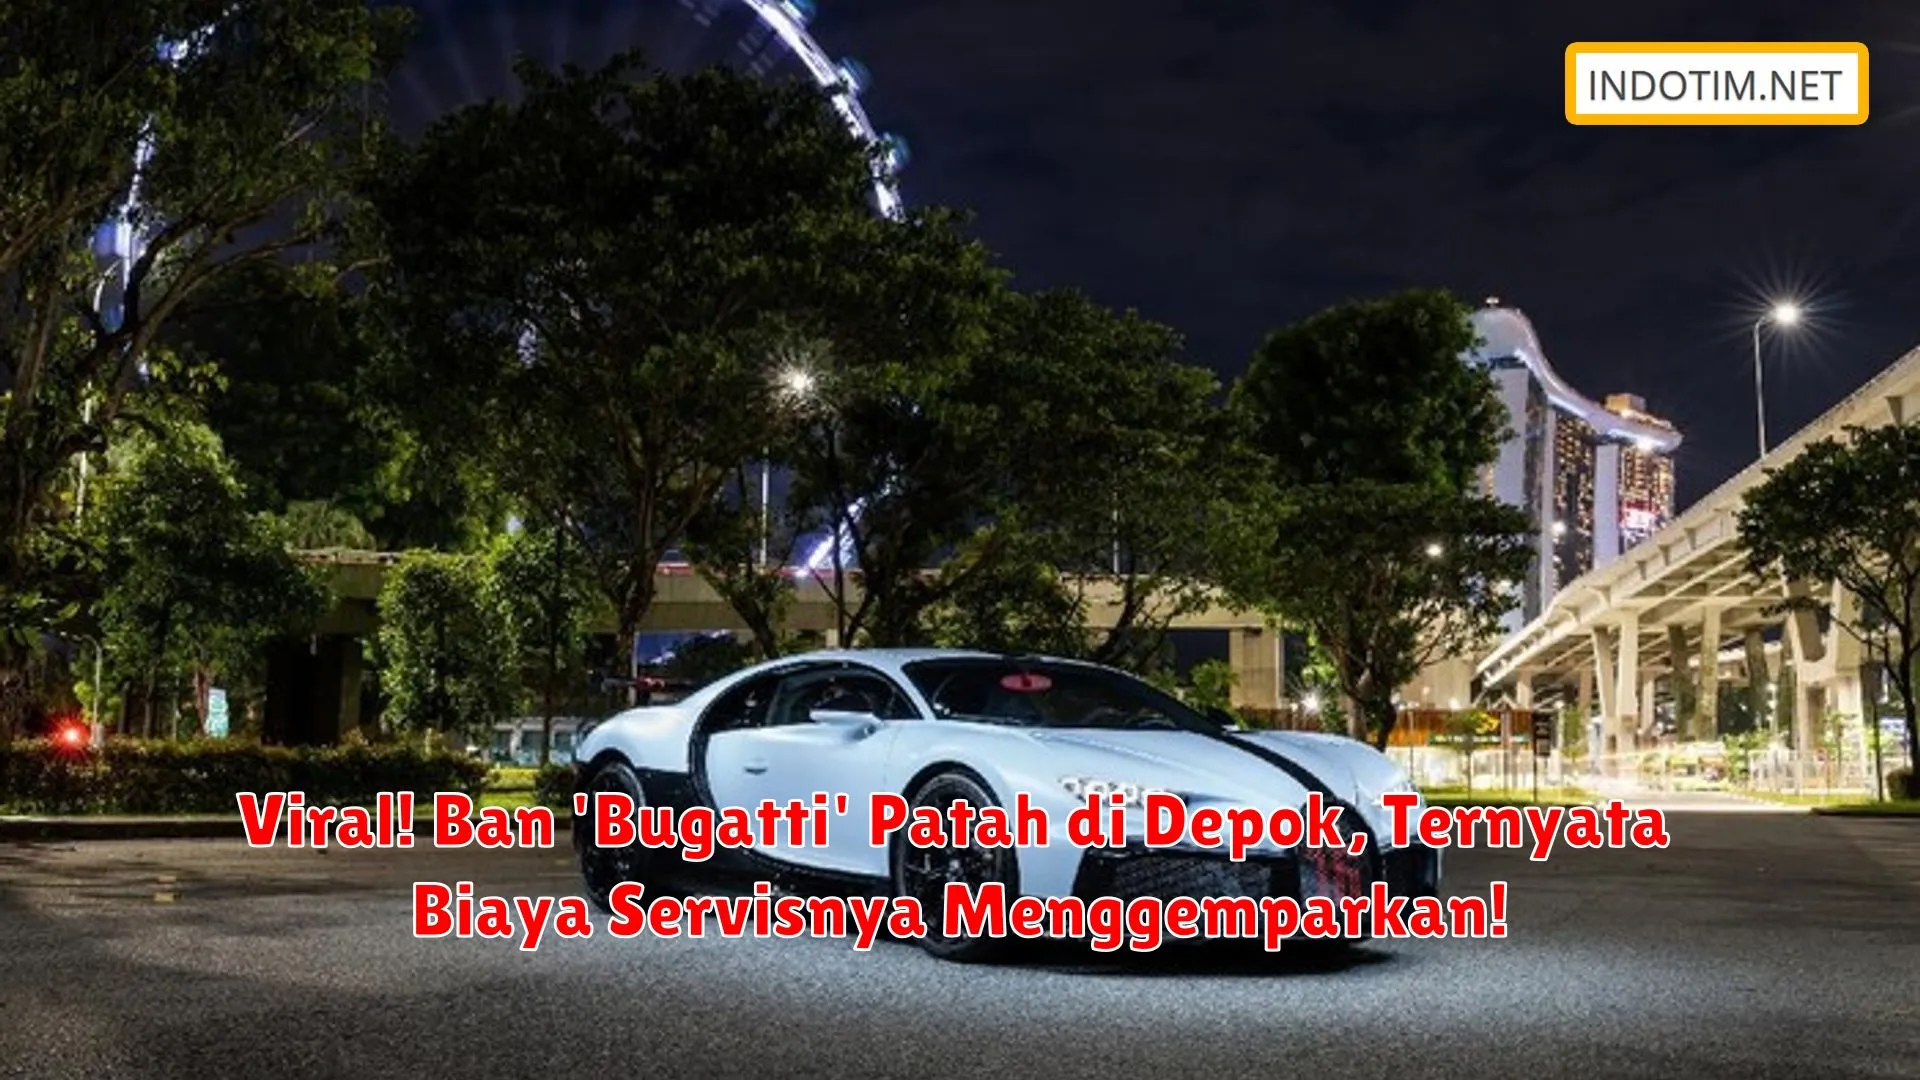 Viral! Ban 'Bugatti' Patah di Depok, Ternyata Biaya Servisnya Menggemparkan!